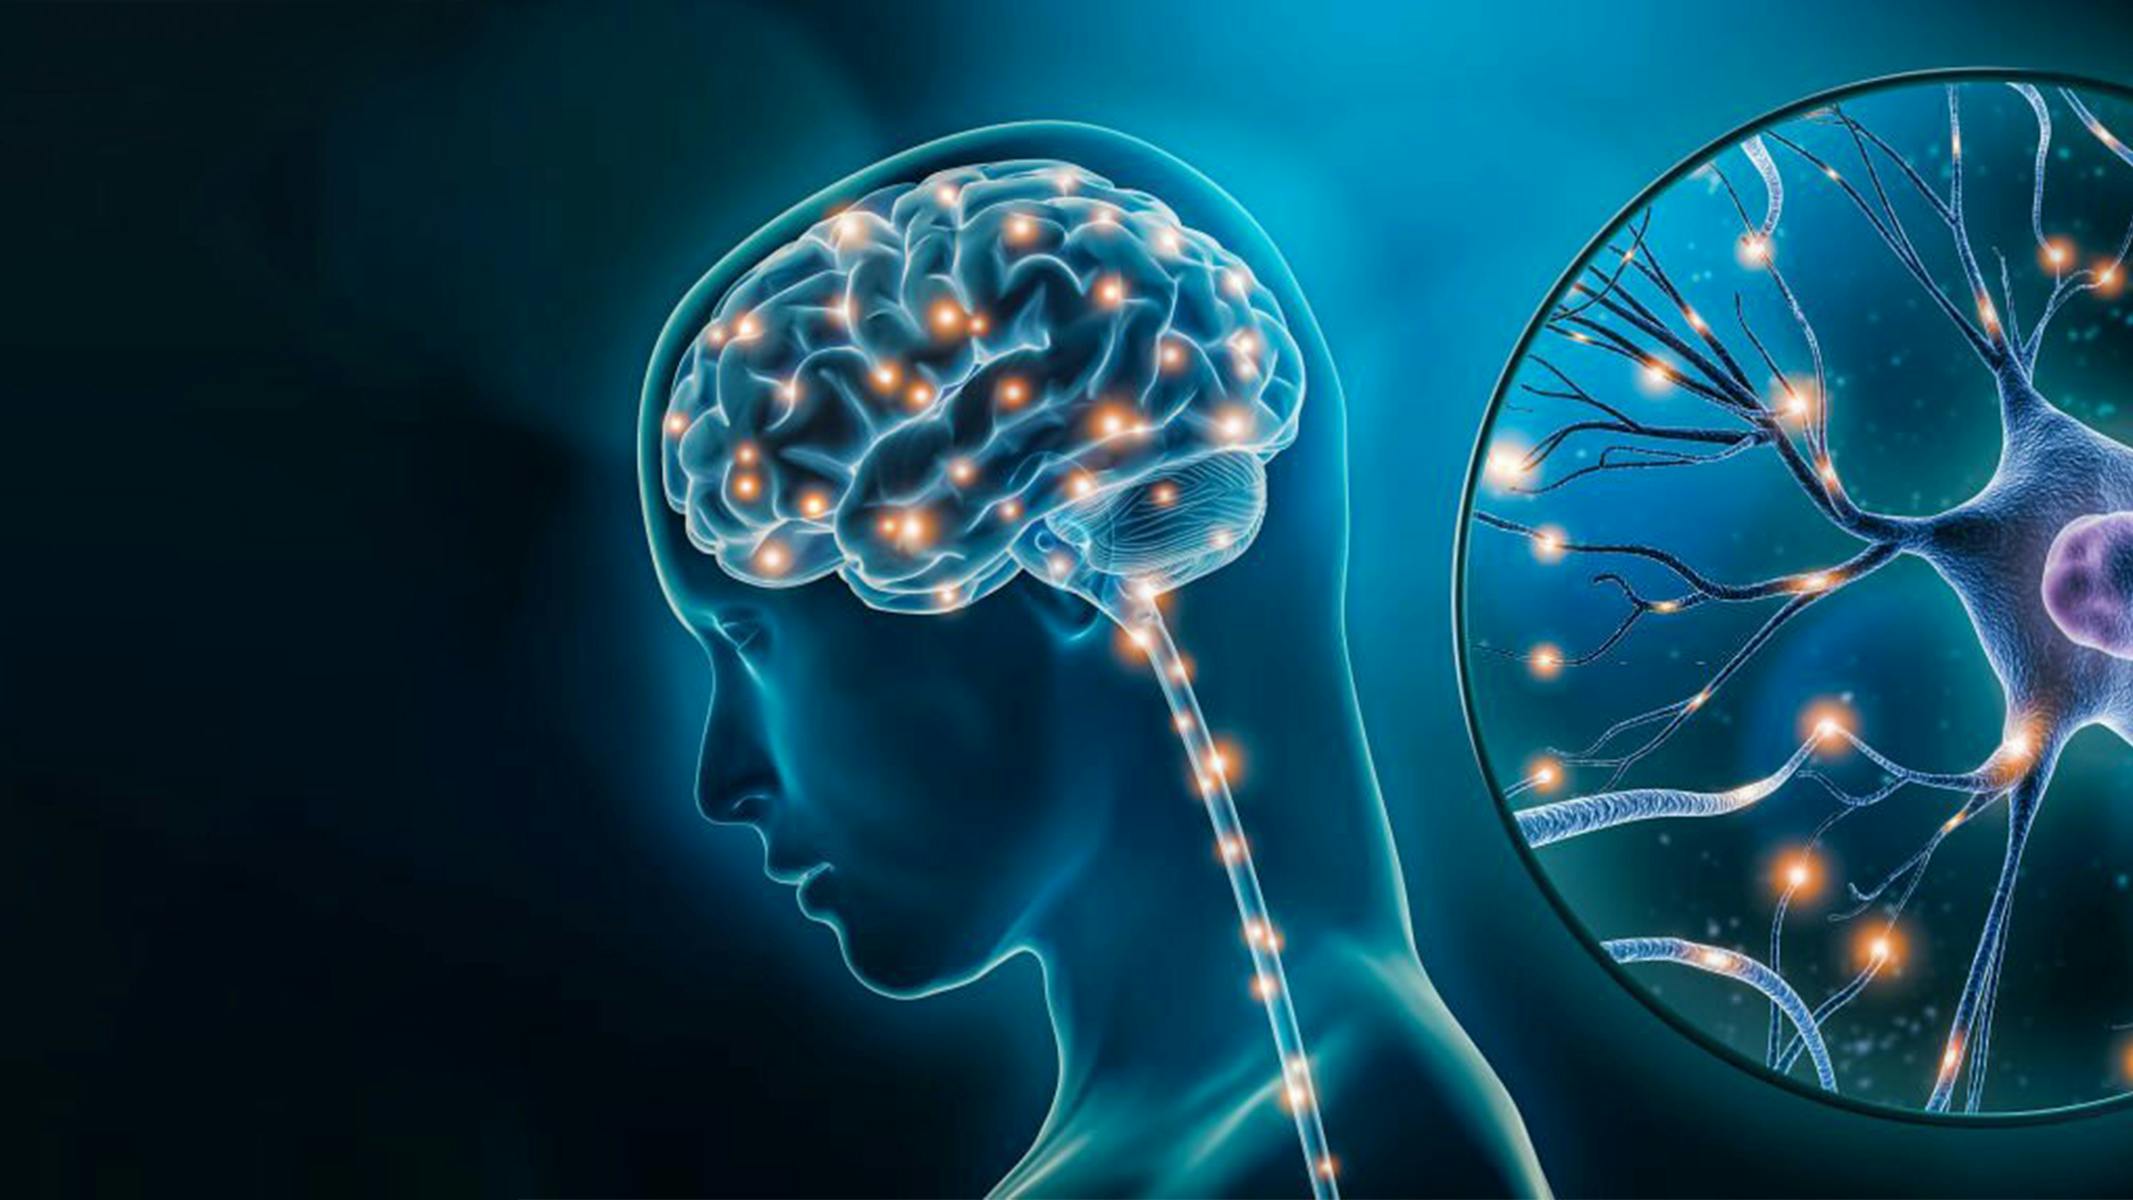 Rappresentazione grafica di un cervello umano e dell'attività delle cellule neuronali.